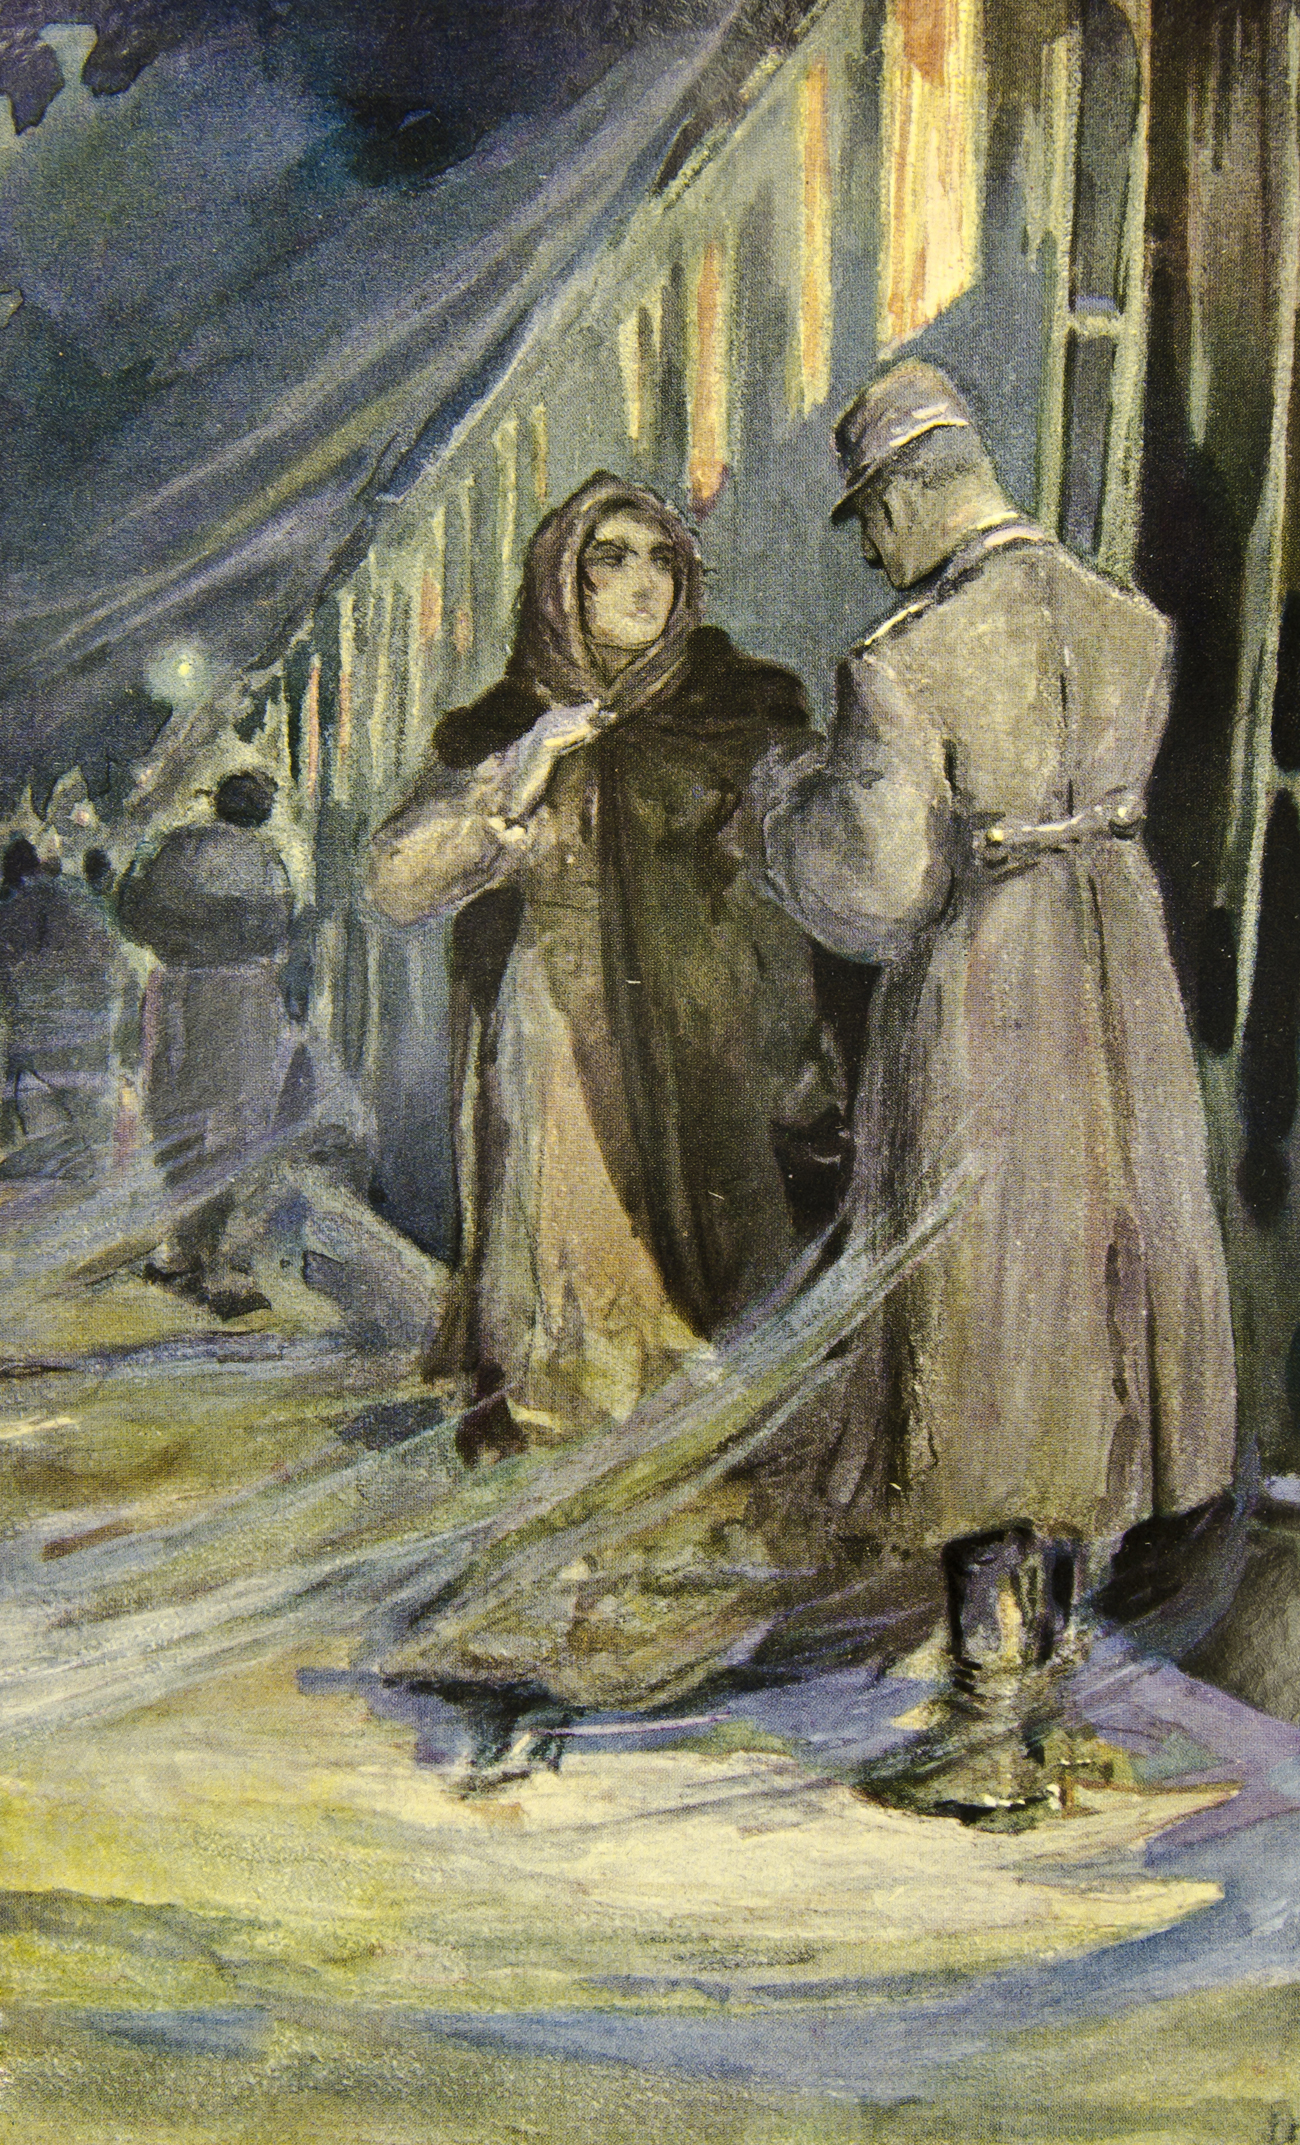 Illustration du livre Abba Karénine par Zakhar Pitchouguine. 1914, Moscou. Crédit : Shutterstock/Legion Media